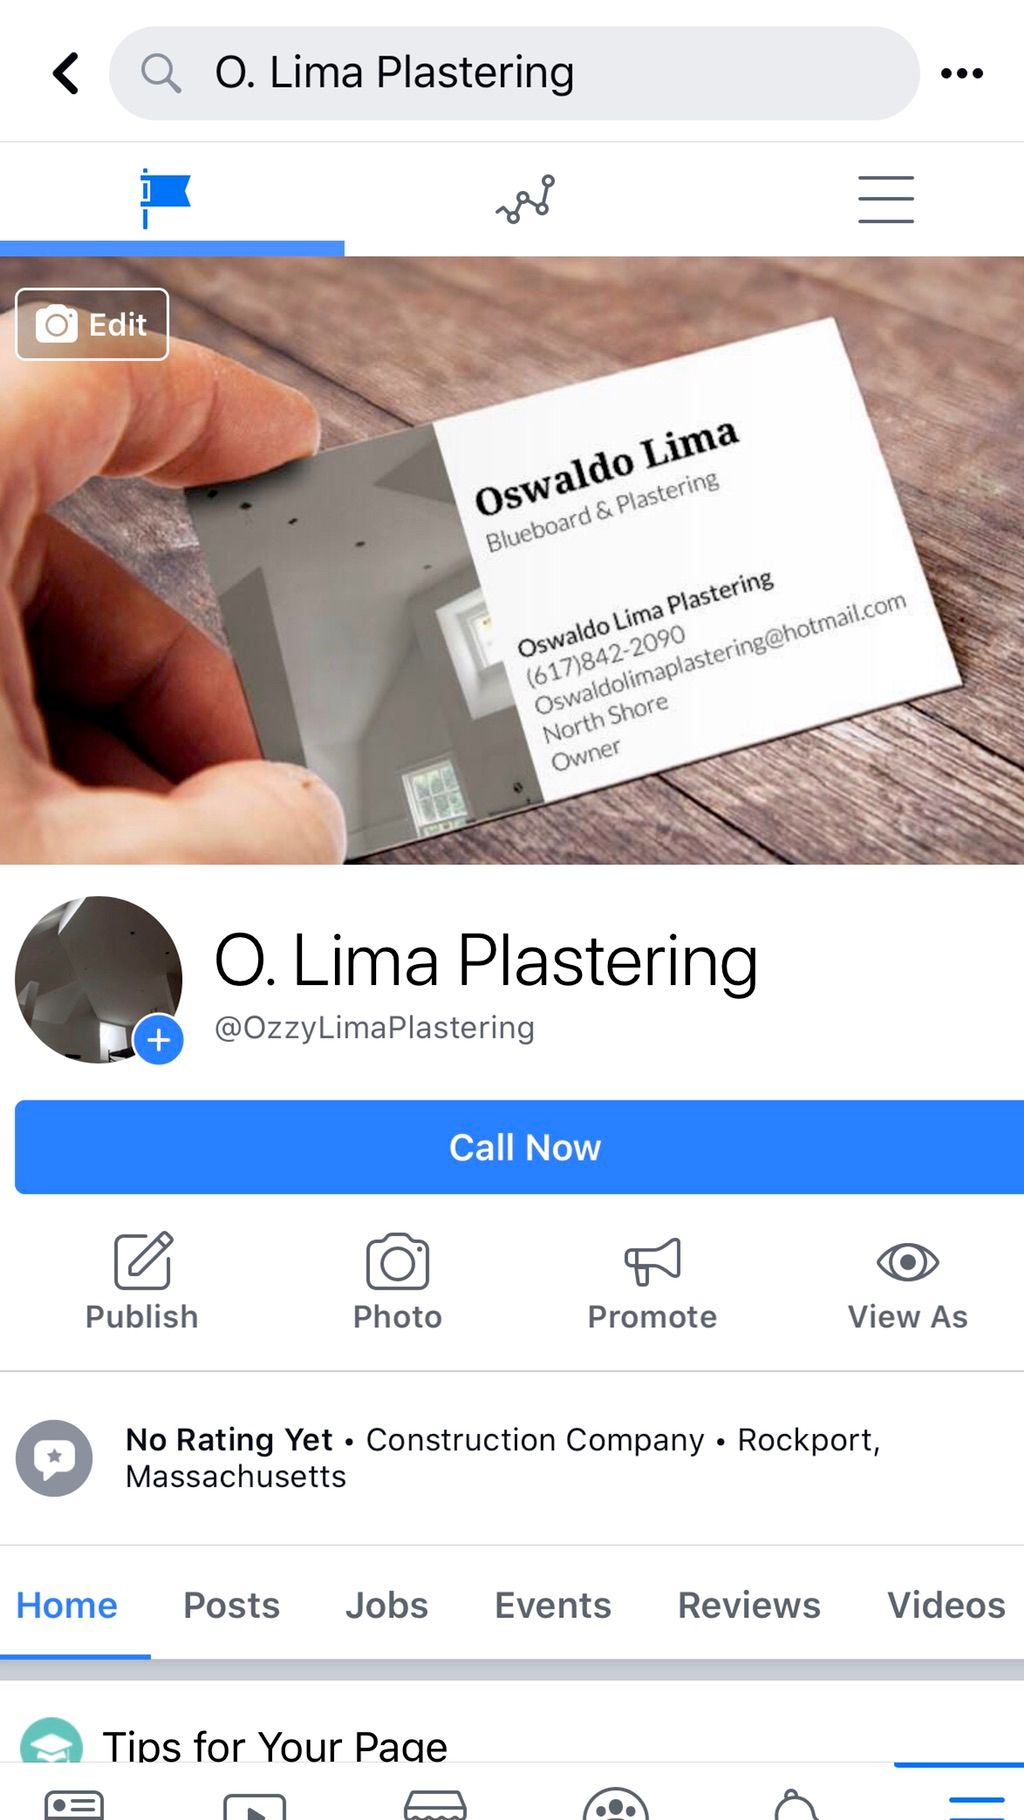 Oswaldo Lima plastering Co.